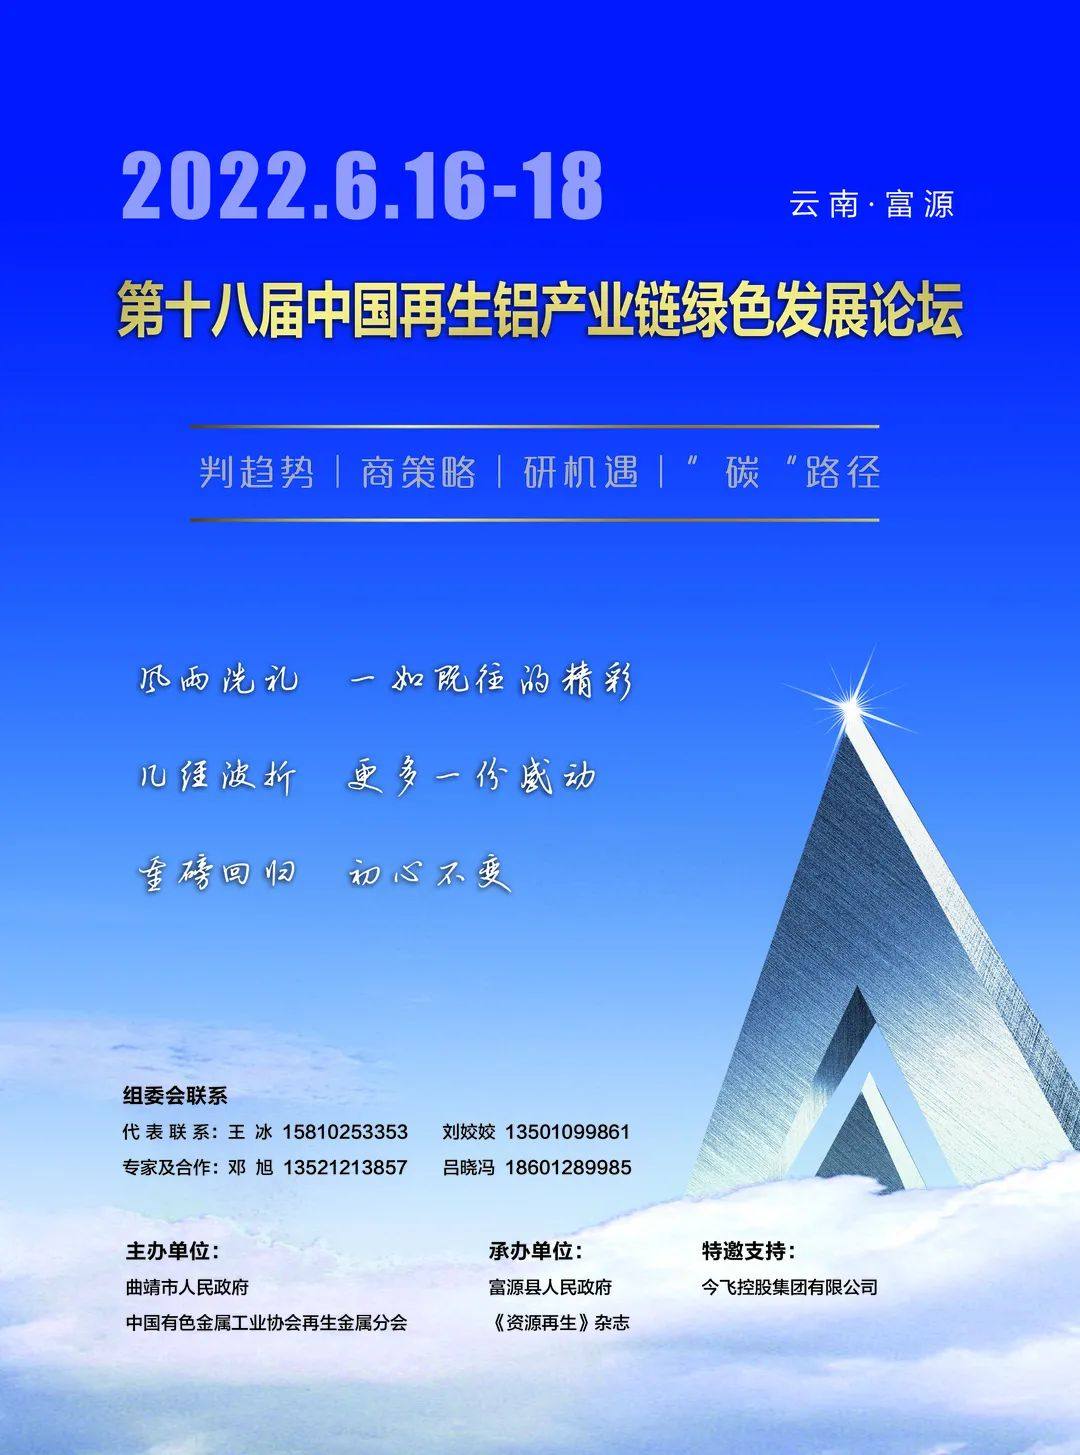 第十八屆中國再生鋁產業鏈綠色發展論壇將在雲南富源舉辦